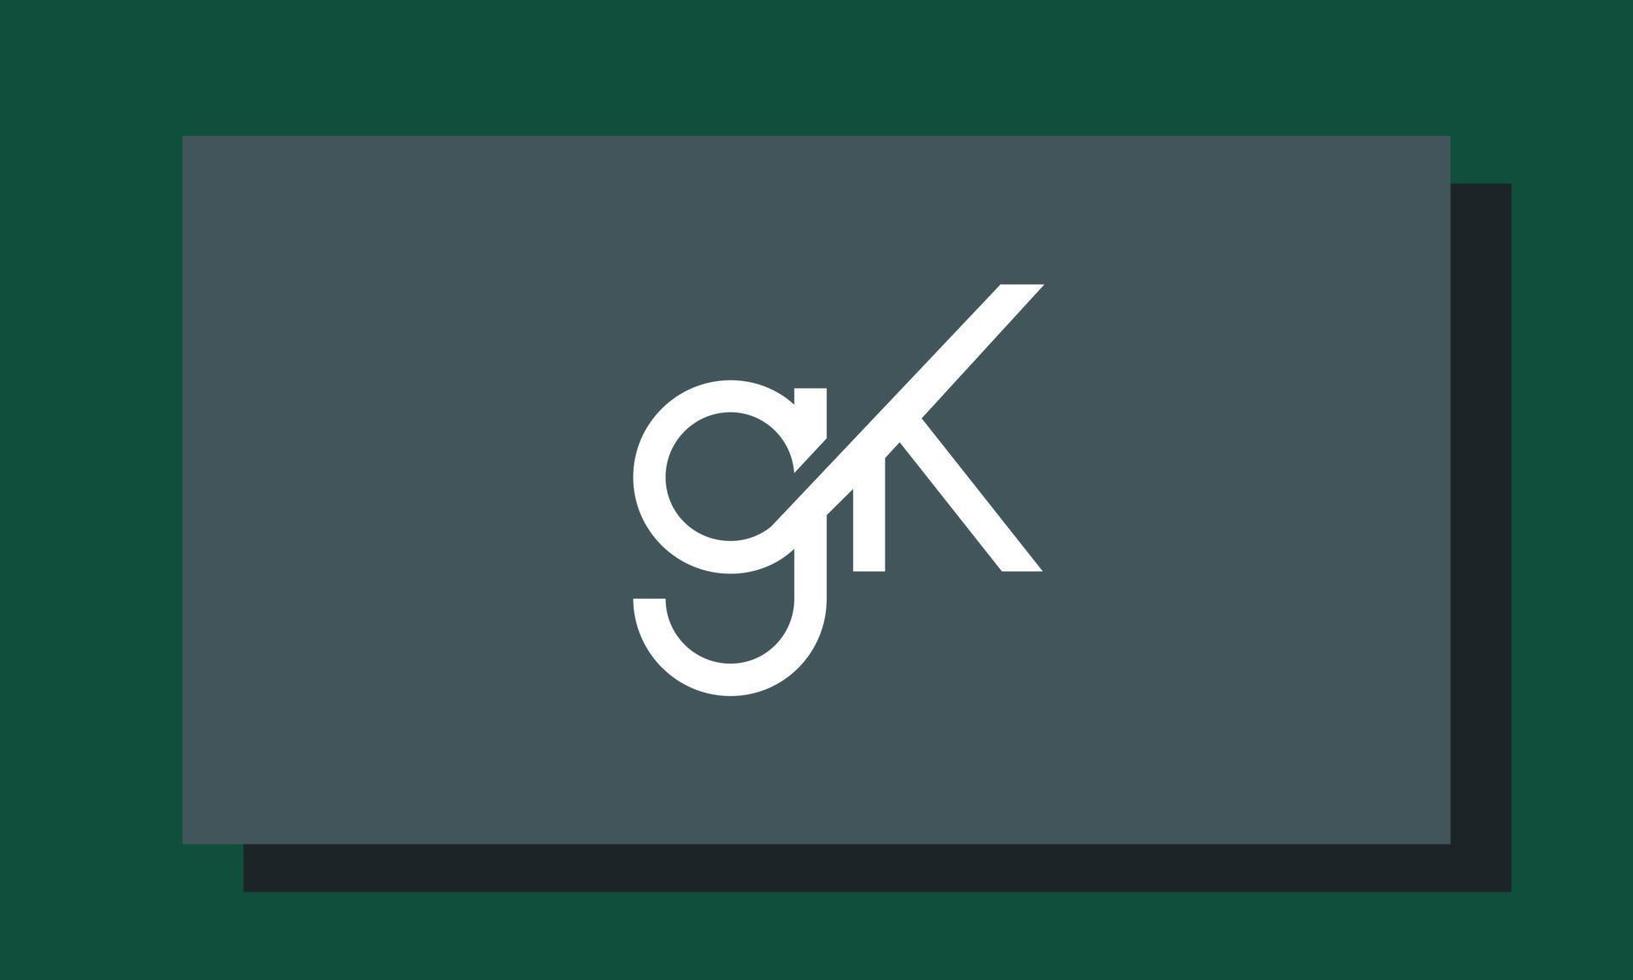 letras do alfabeto iniciais monograma logotipo gk, kg, g e k vetor